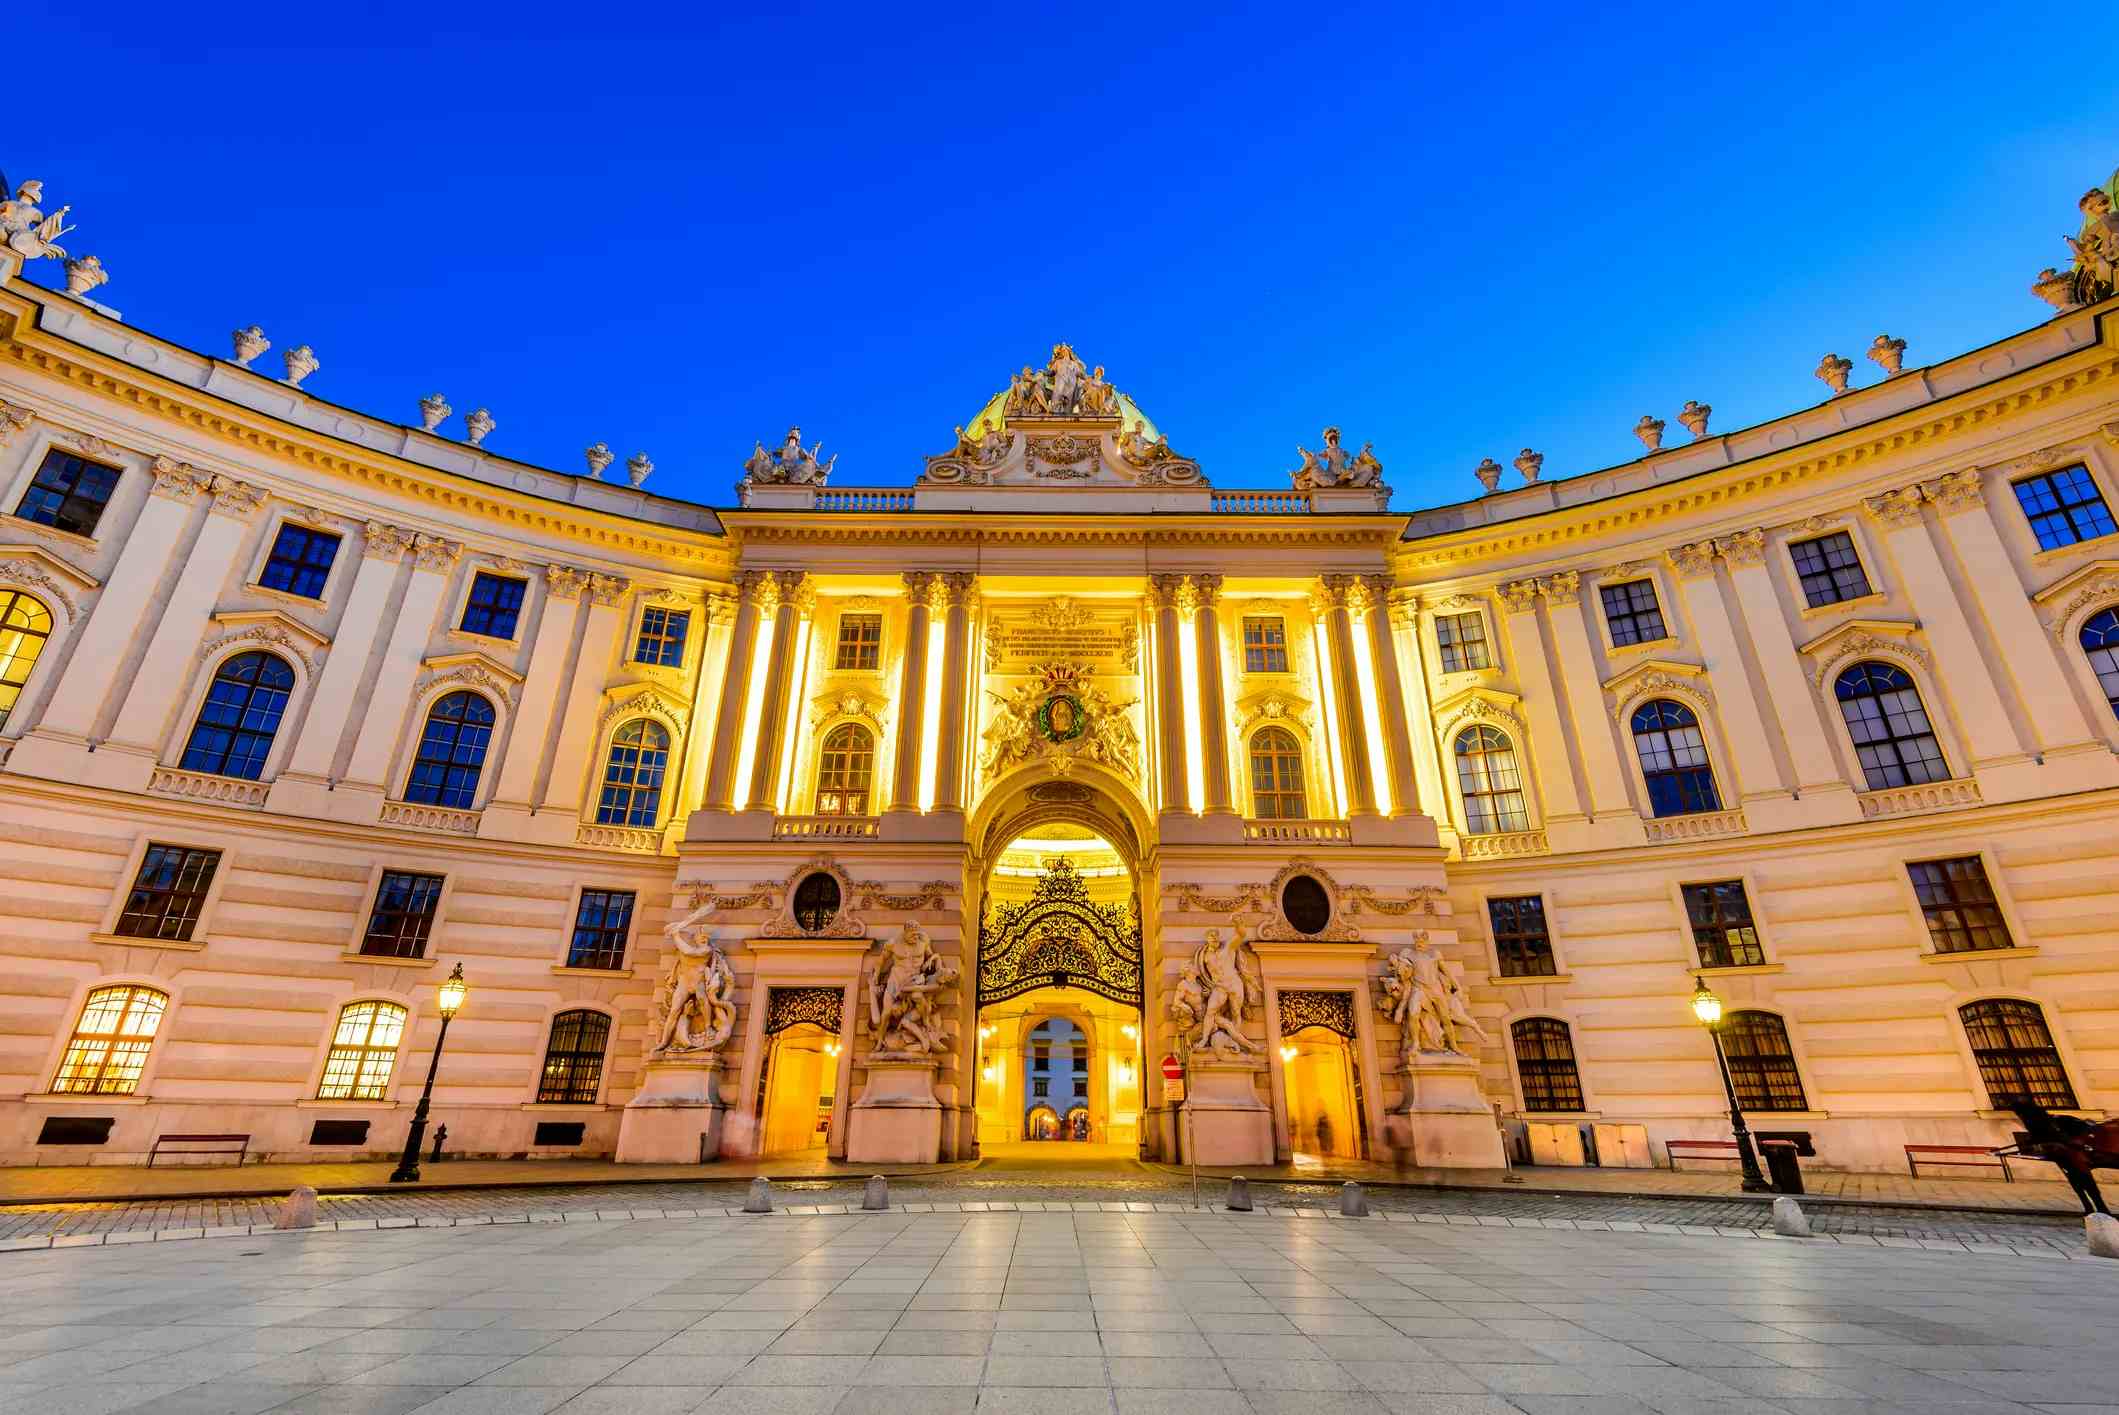 The Hofburg image